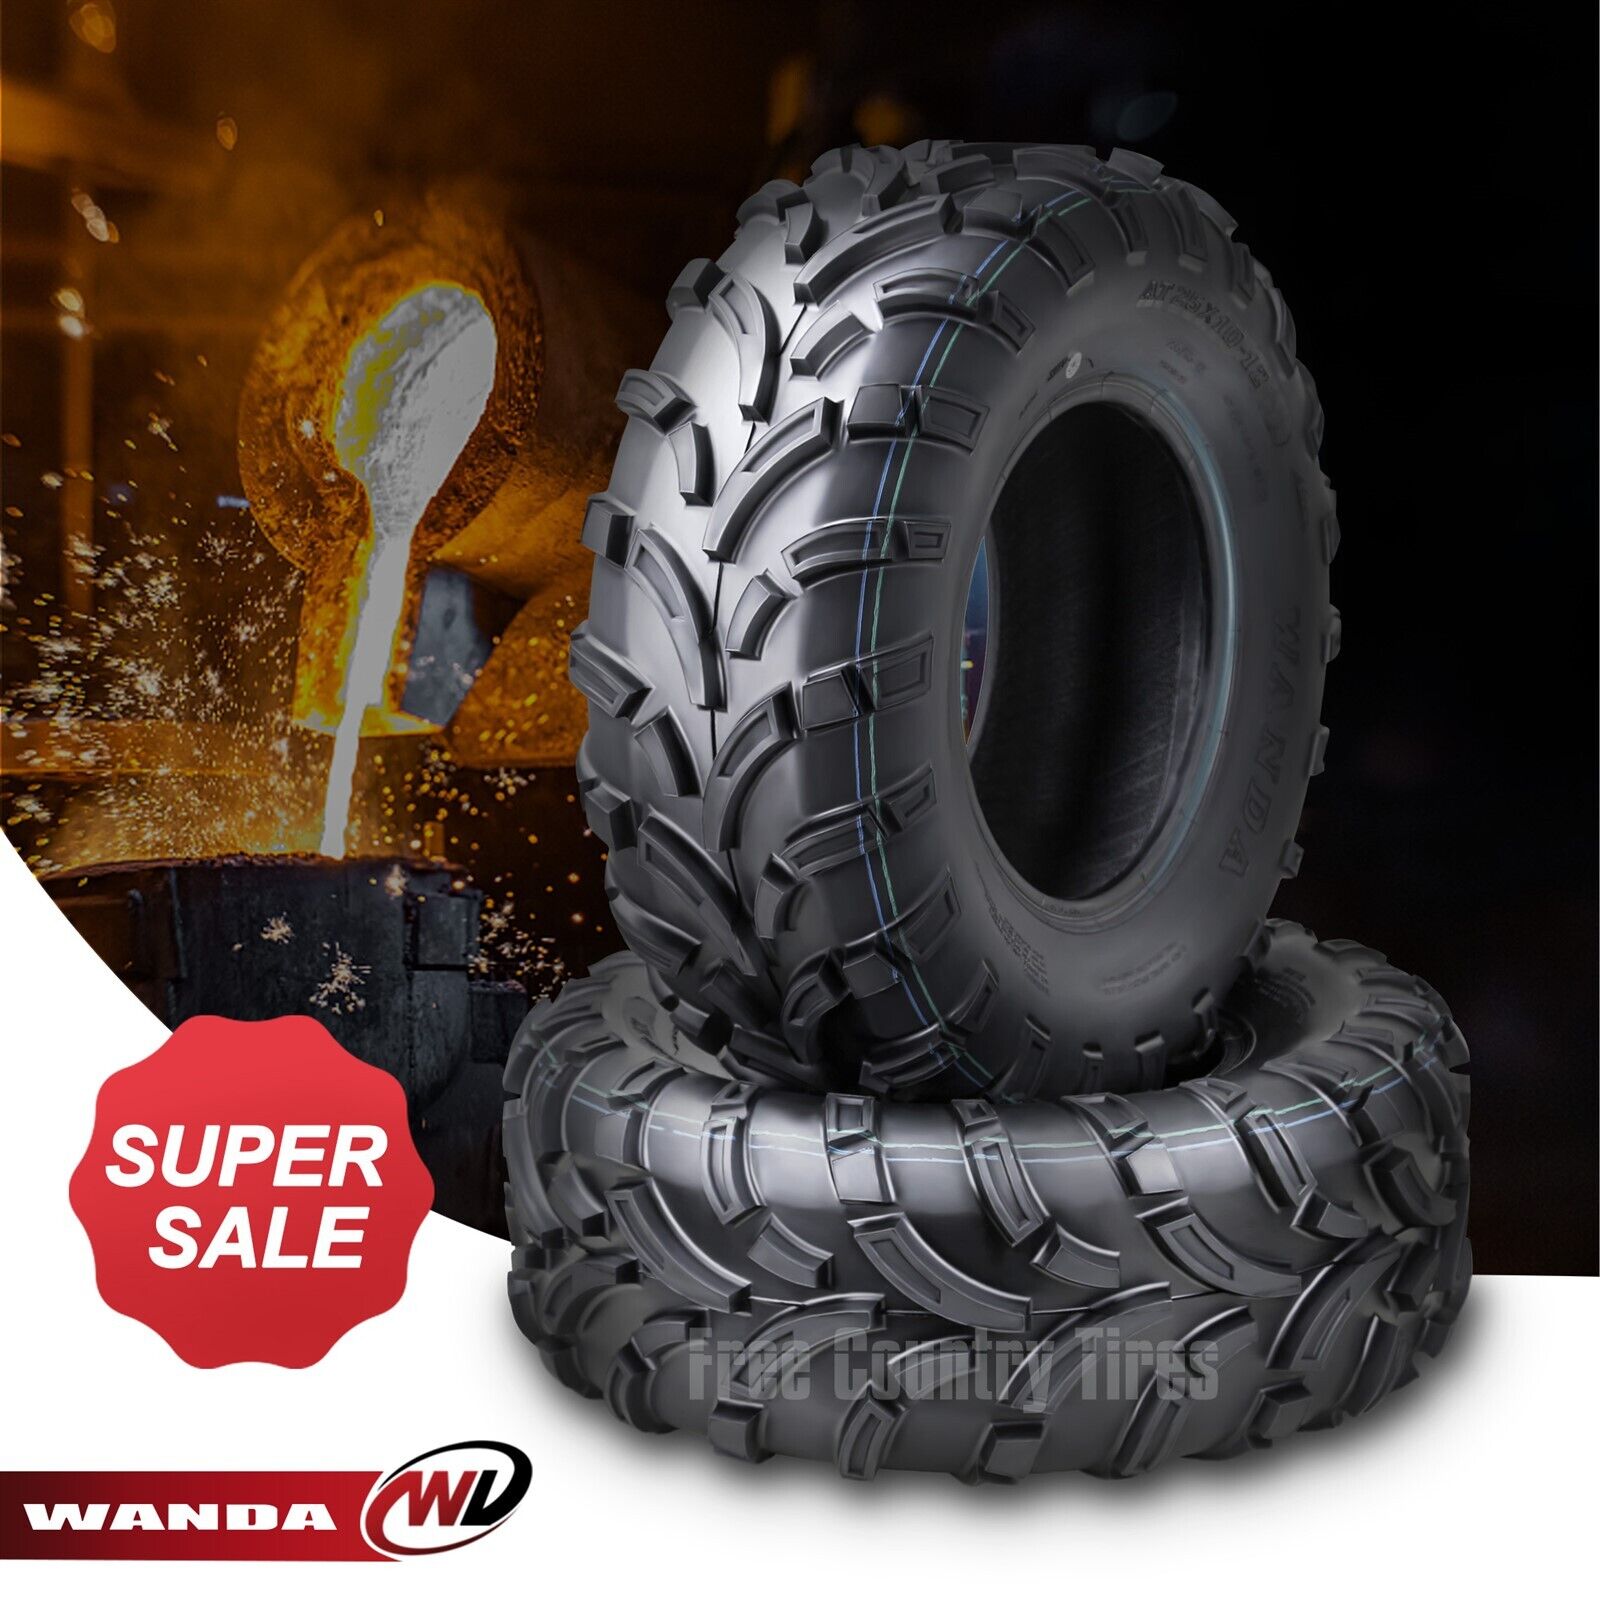 Set of 2 WANDA Premium 26x9-12 UTV ATV Tires 26x9x12 26x9.00-12 26x9.00x12